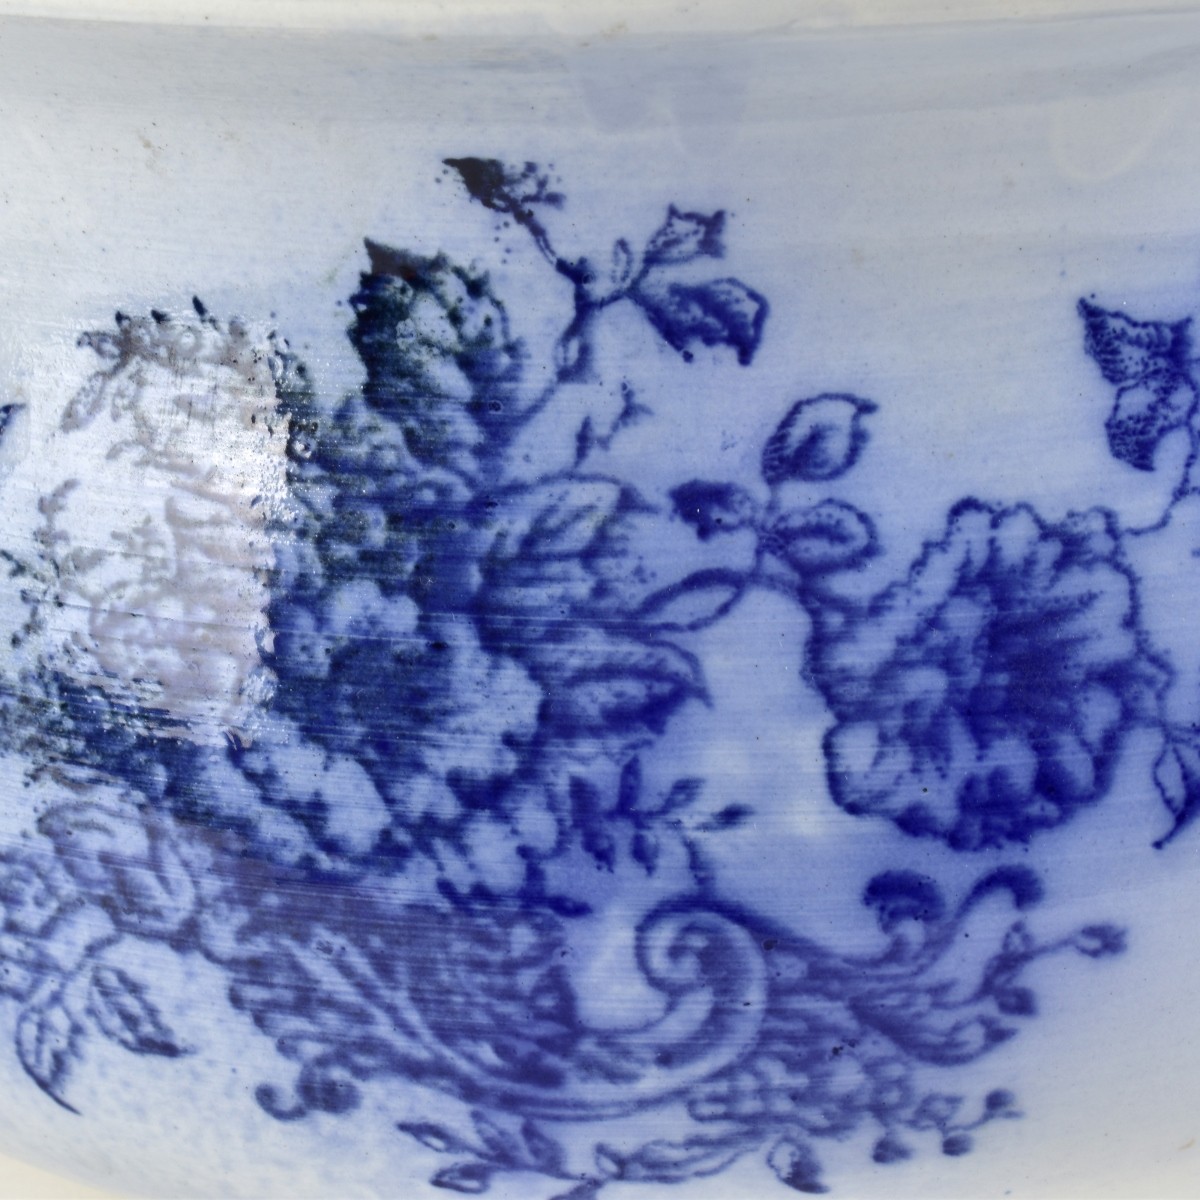 3 Flo Blue Porcelain Pots